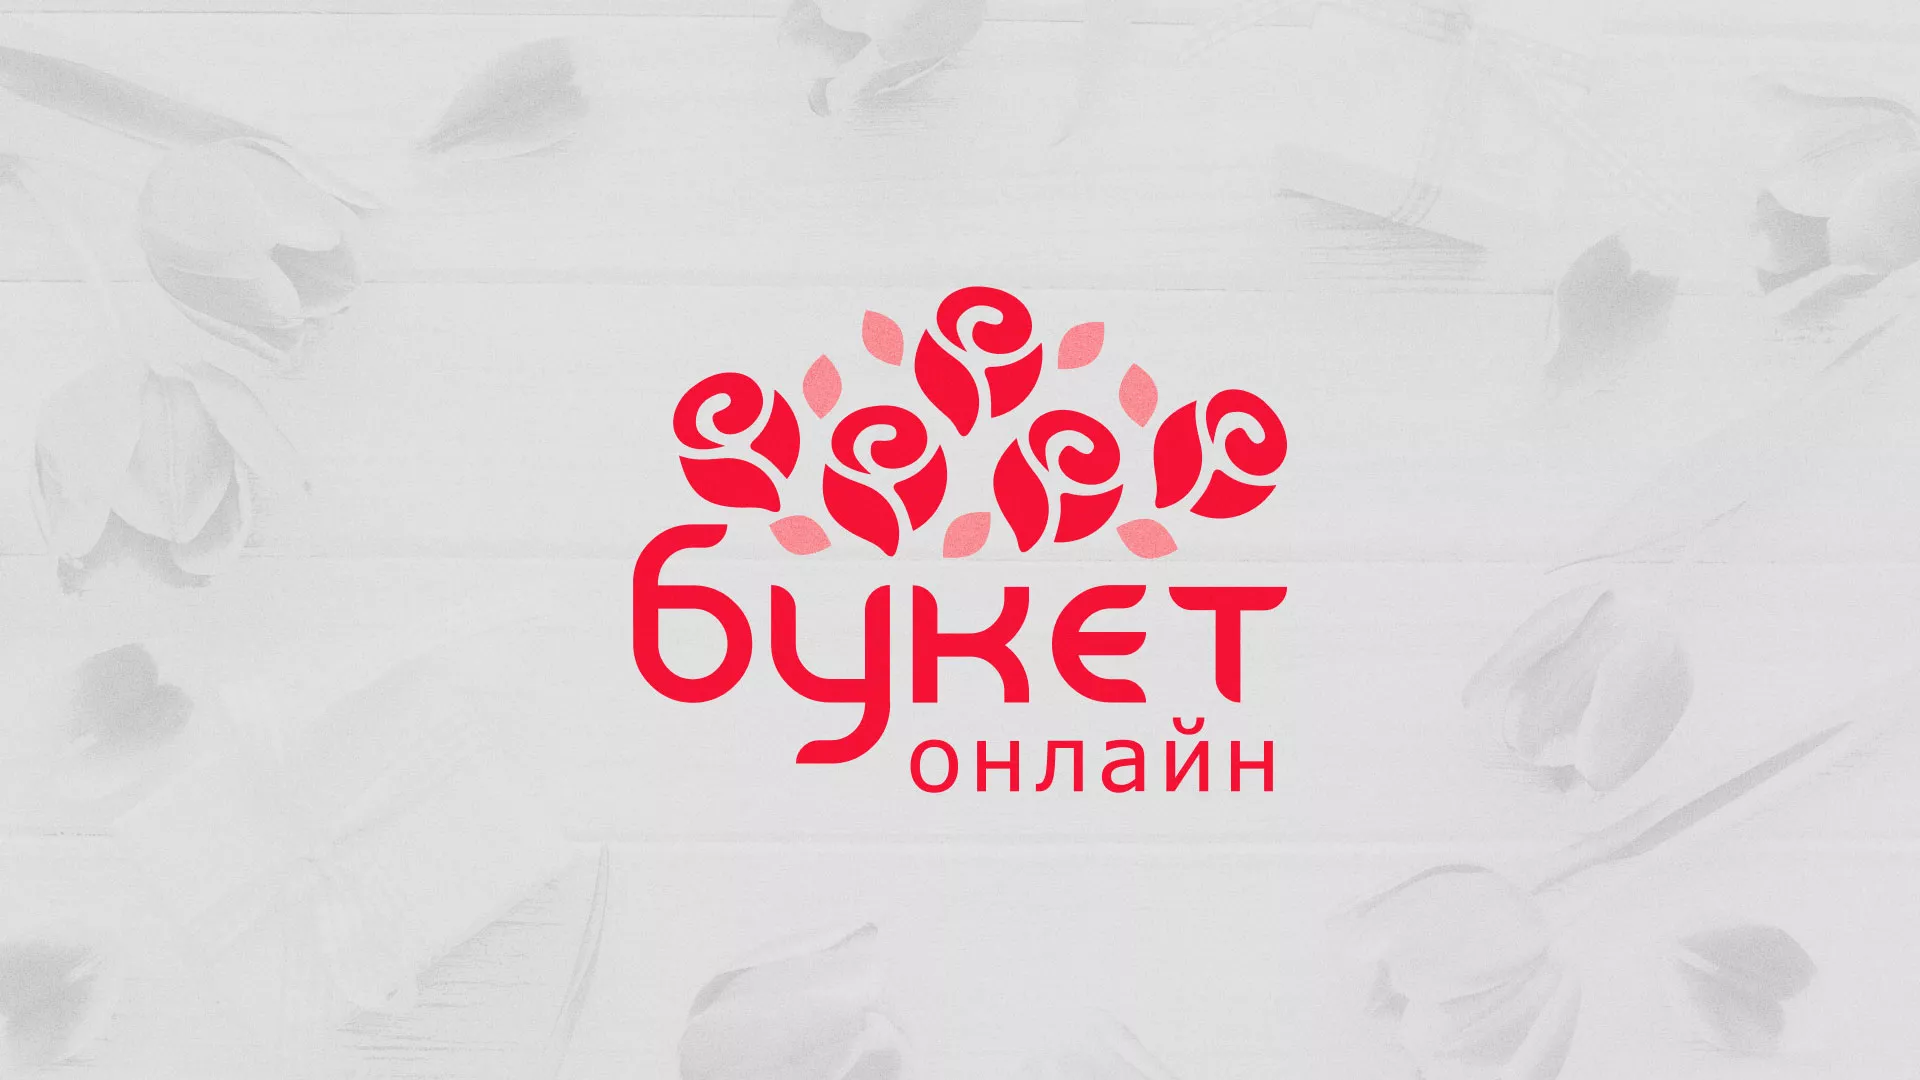 Создание интернет-магазина «Букет-онлайн» по цветам в Йошкар-Оле